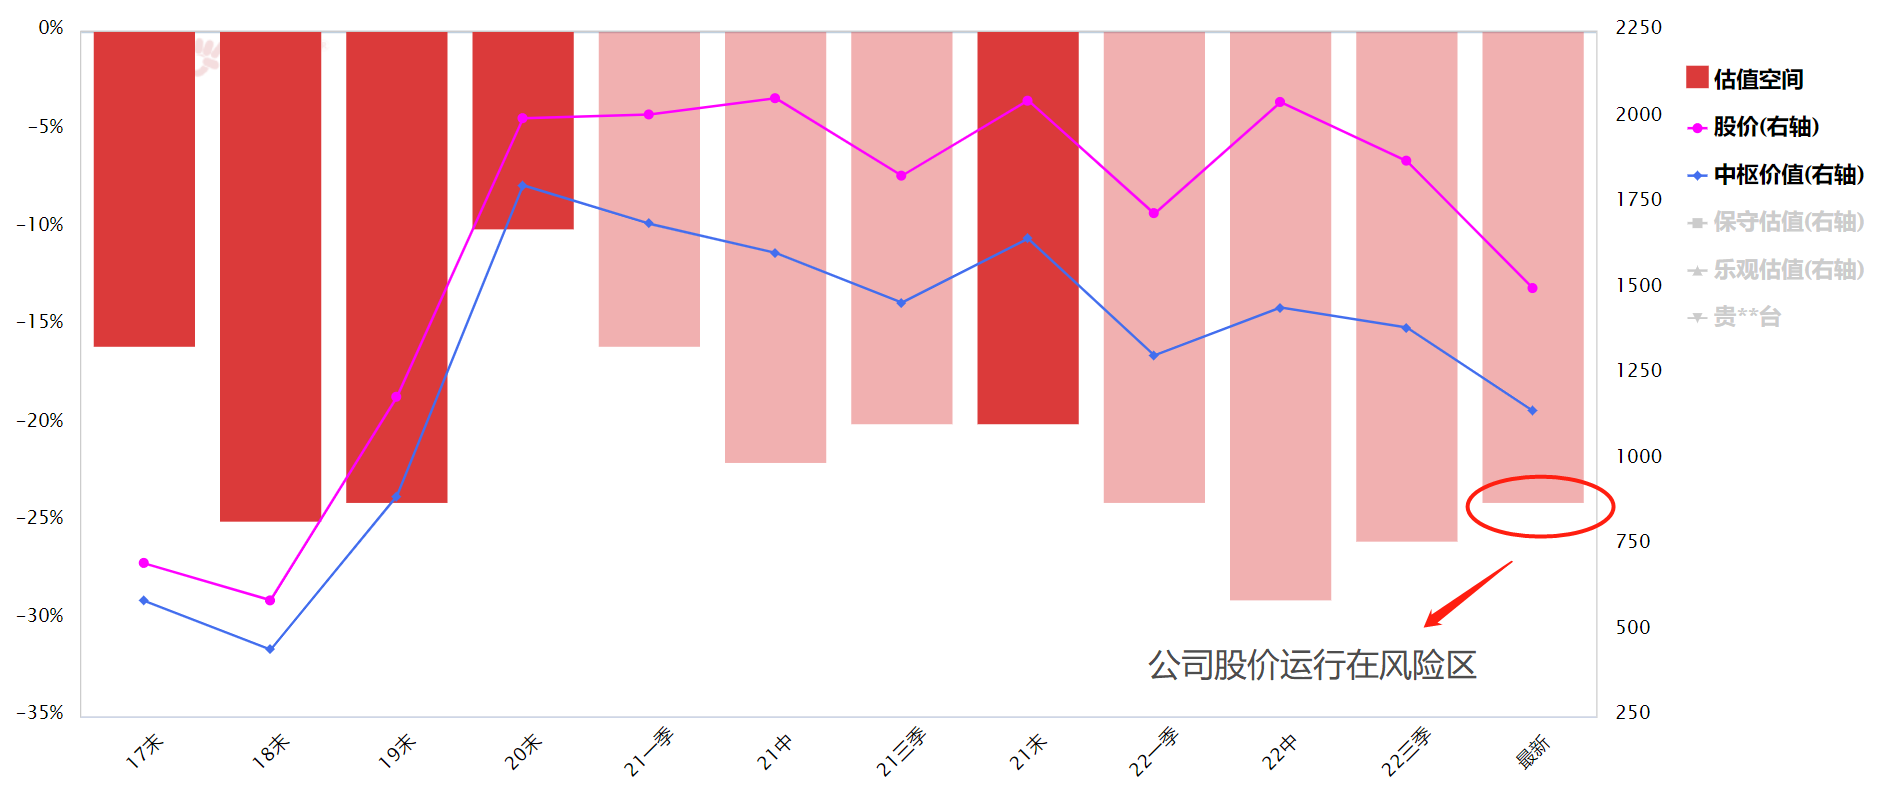 贵州茅台股价再创逾27个月新低 时间的玫瑰凋零了吗？